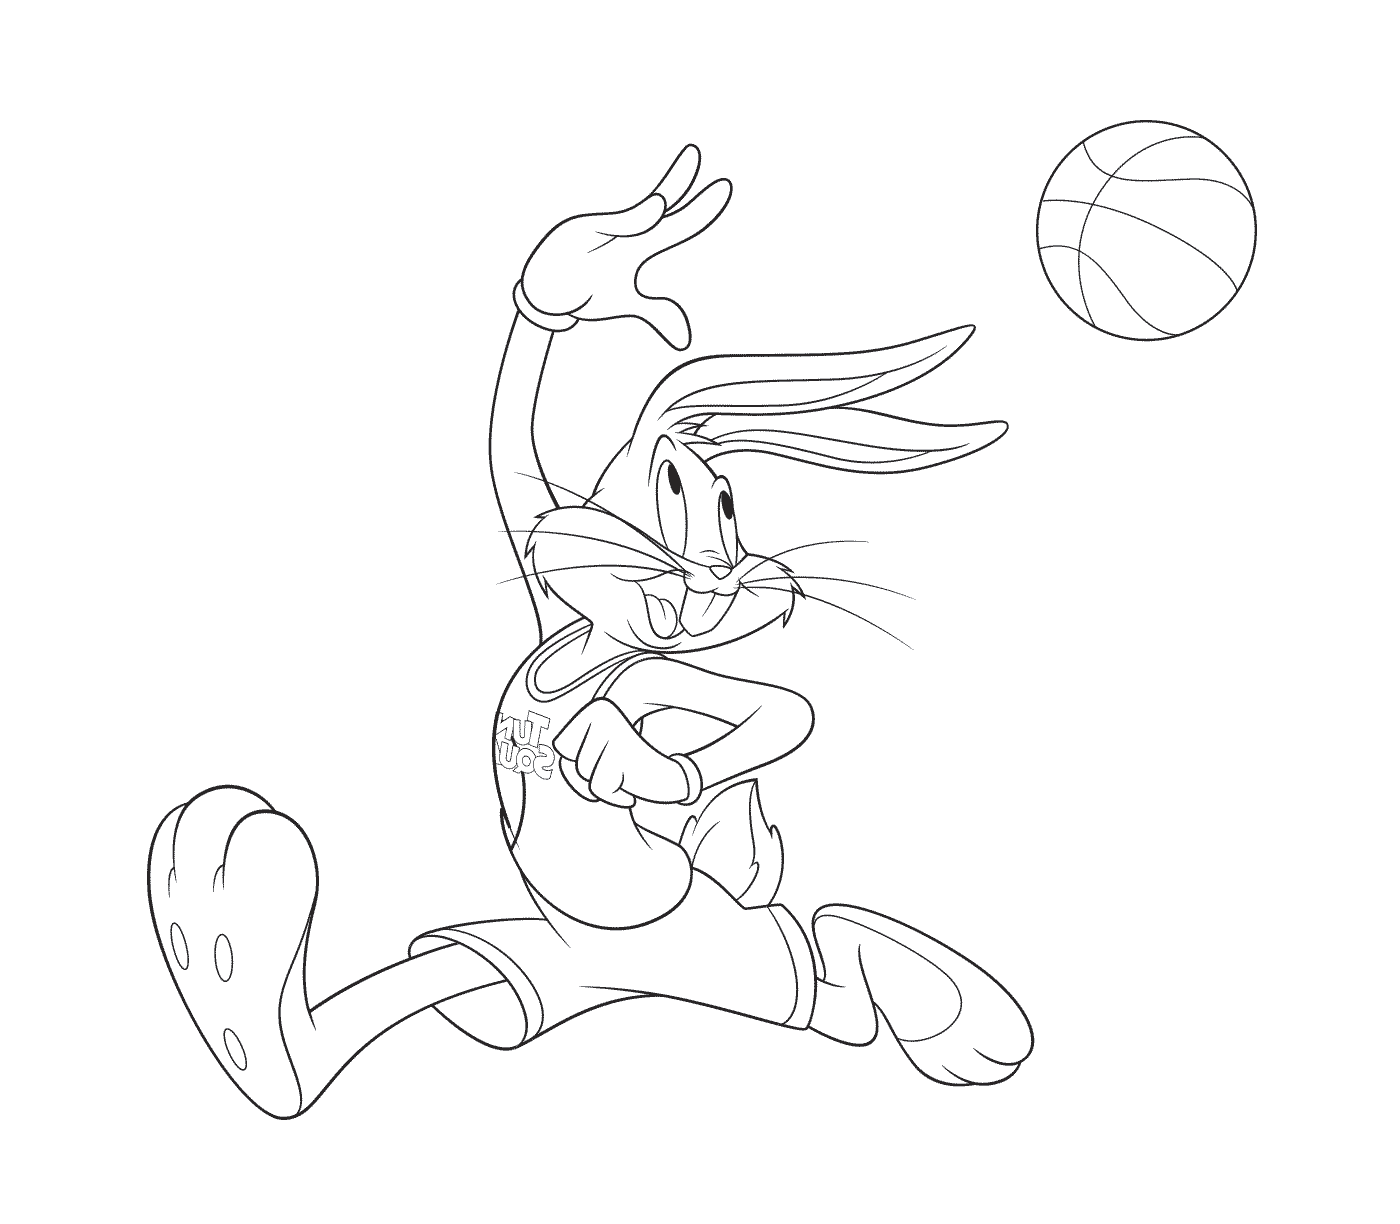  Coelho jogando basquete 